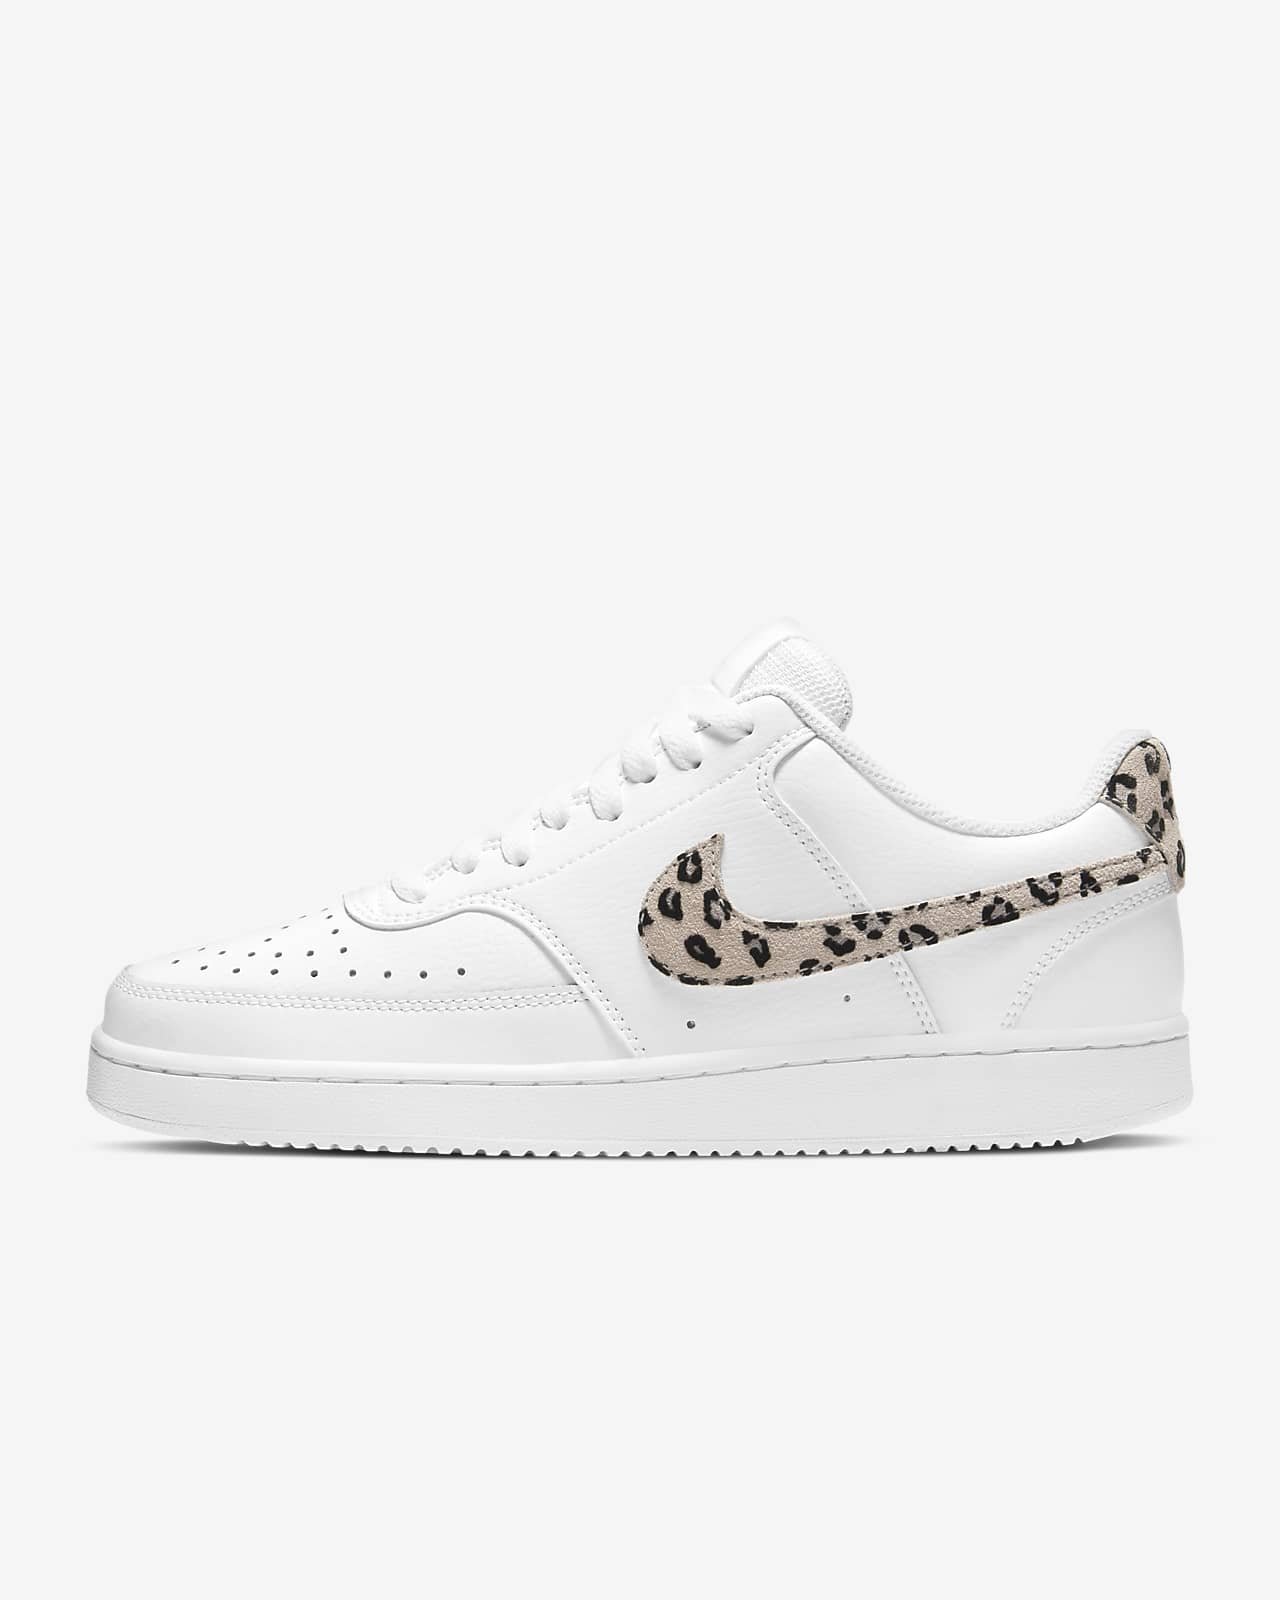 cheetah nike shoes